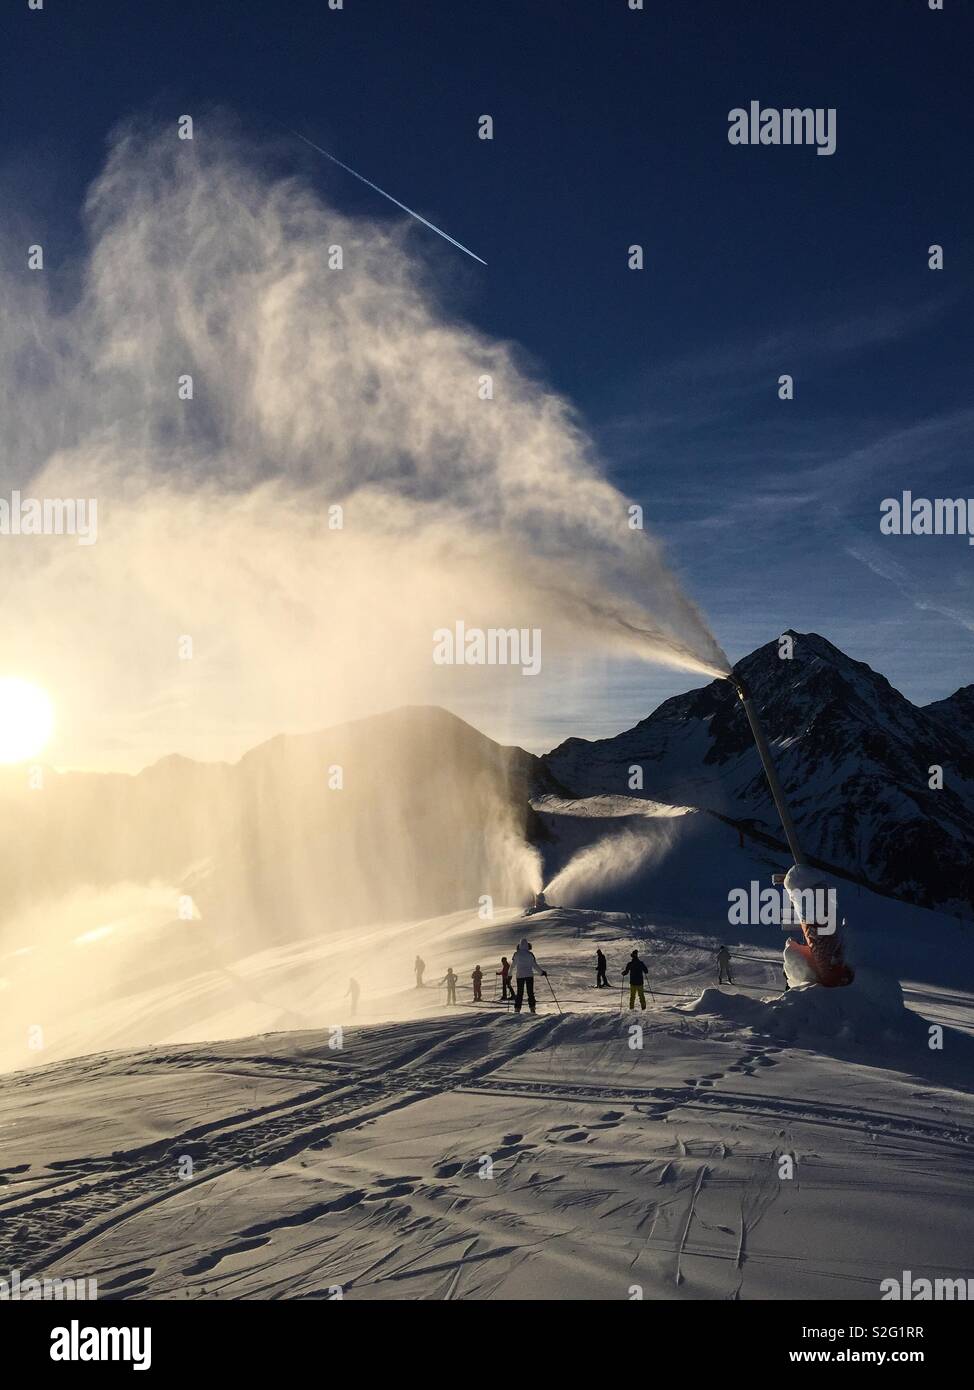 The Sun shining through snow canon spray on a ski slope in the morning. Stock Photo